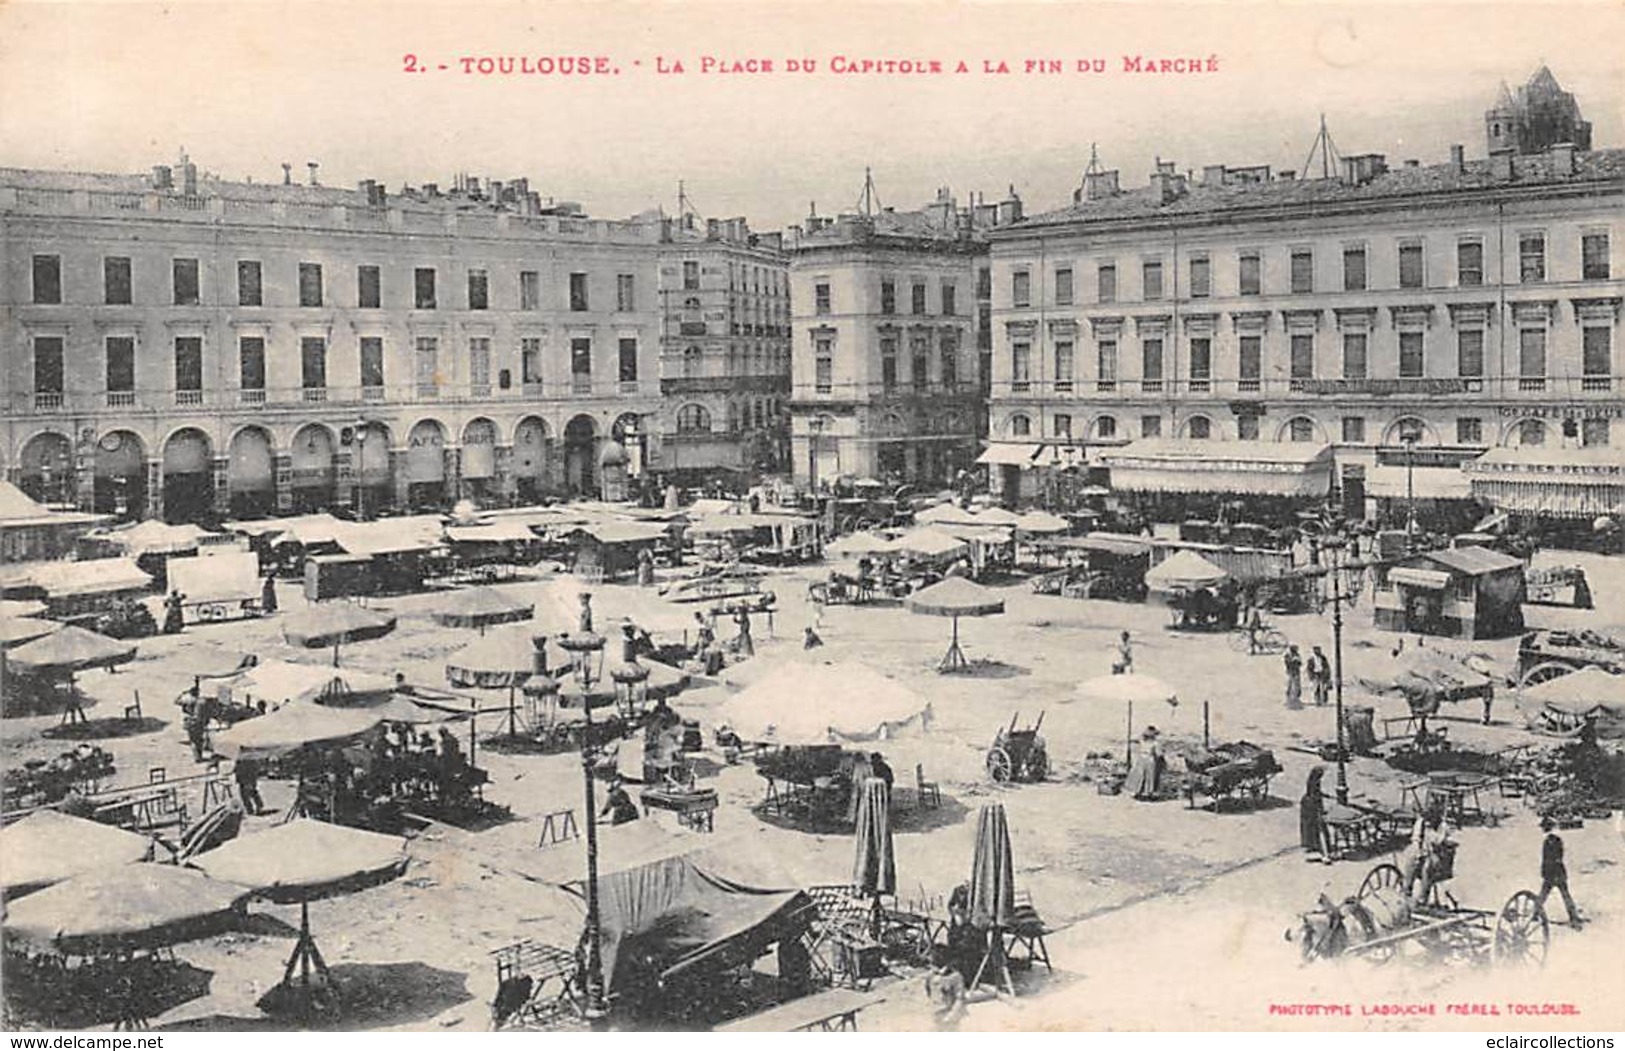 Toulouse        31       Lot de 25 cartes thème Les Marchés et les Halles  dont doubles        ( Voir scan)